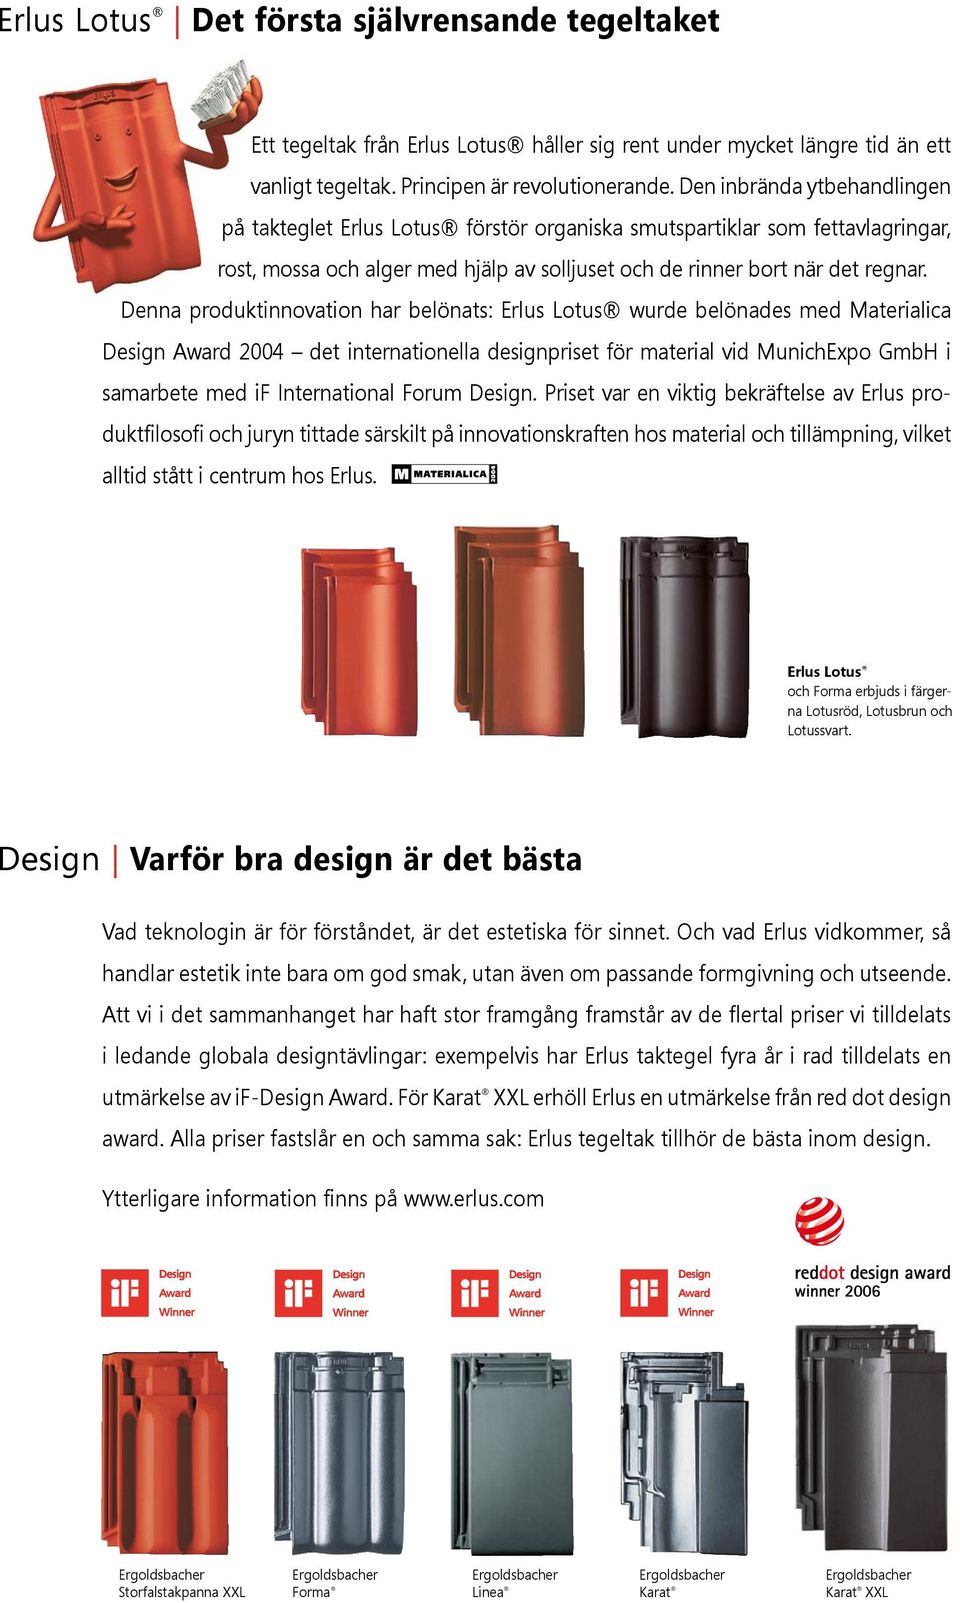 Denna produktinnovation har belönats: Erlus Lotus wurde belönades med Materialica Design Award 2004 det internationella designpriset för material vid MunichExpo GmbH i samarbete med if International